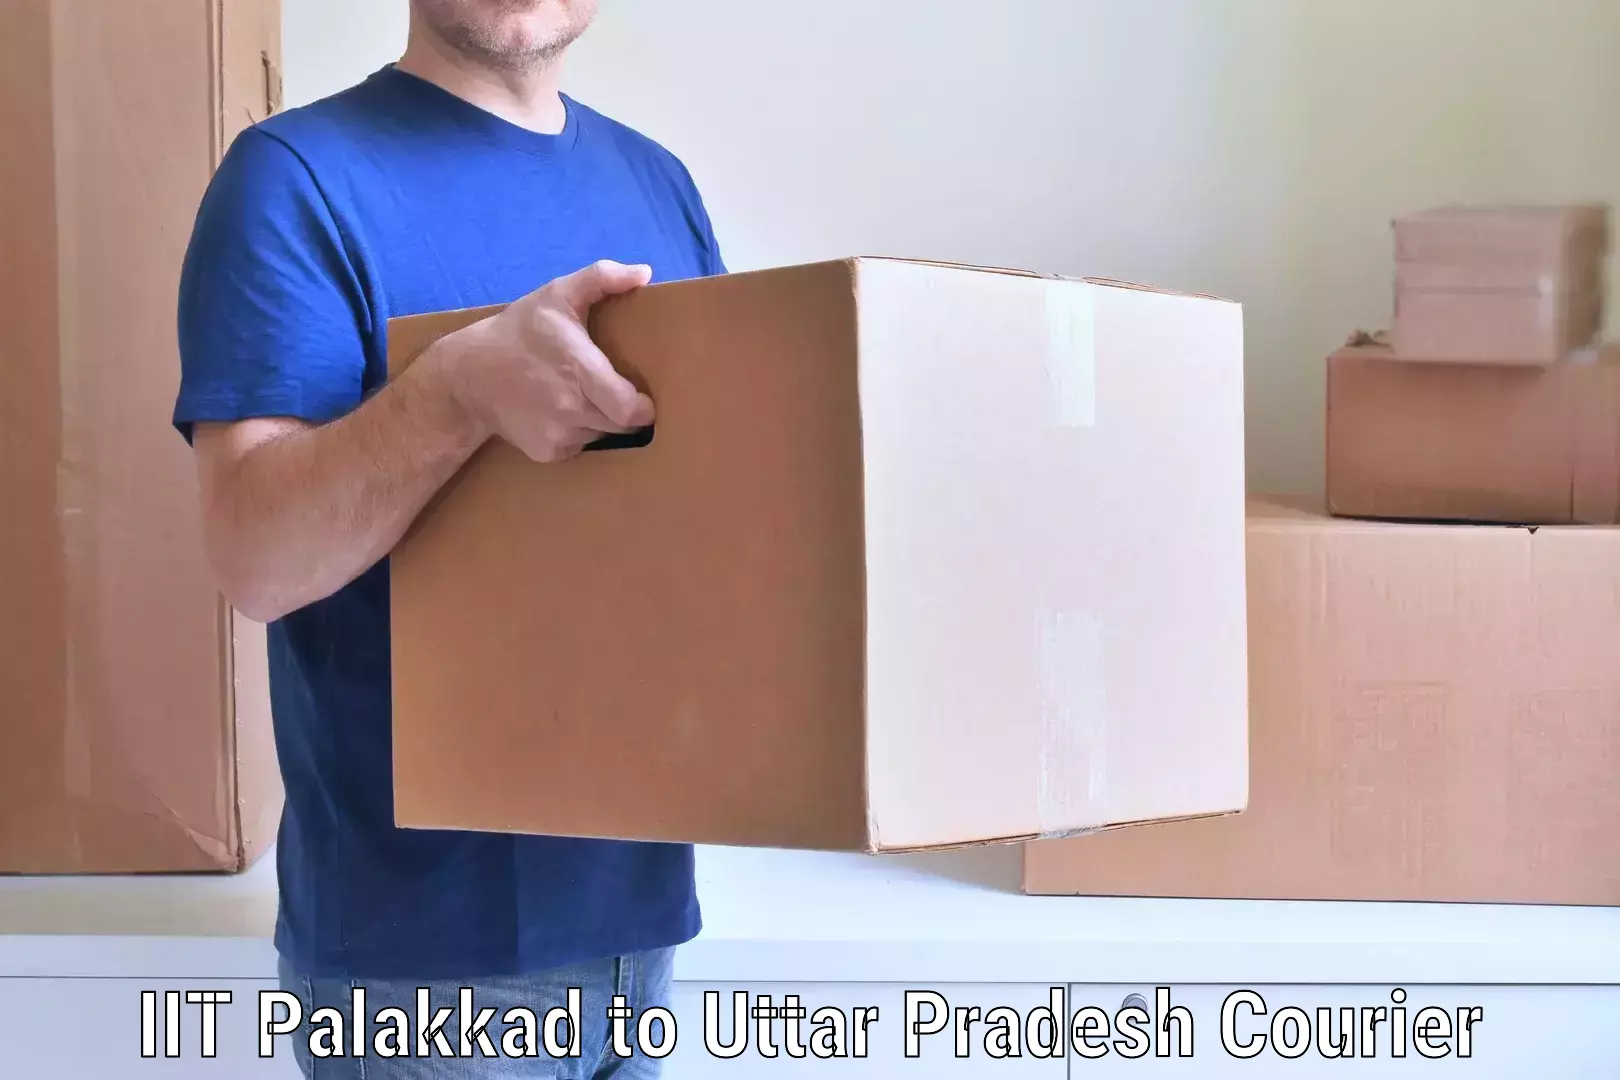 Skilled furniture movers IIT Palakkad to Etawah